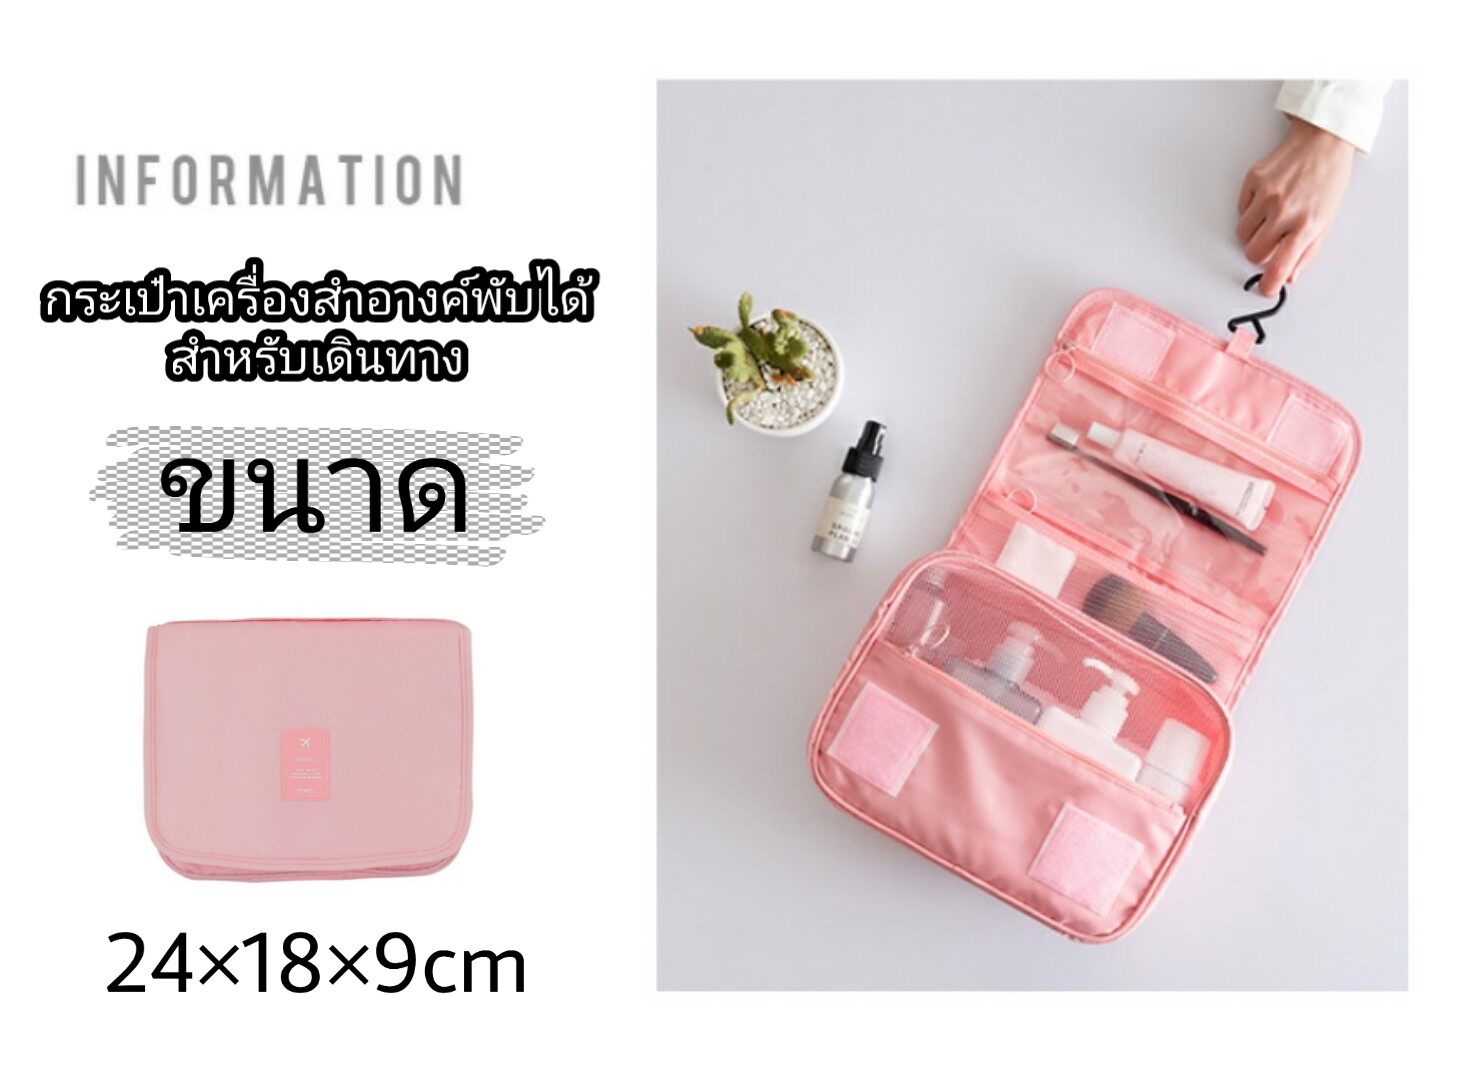 New!! กระเป๋าแขวนพกพา กระเป๋าเครื่องสำอางค์พับได้ กระเป๋าใส่อุปกรณ์อาบน้ำ พกพา พับได้แขวนได้ พกพาได้ทุกที่ ที่เดินทาง Chill Fyn (สต๊อกในไทย) สี สีชมพูพาสเทล สี สีชมพูพาสเทล